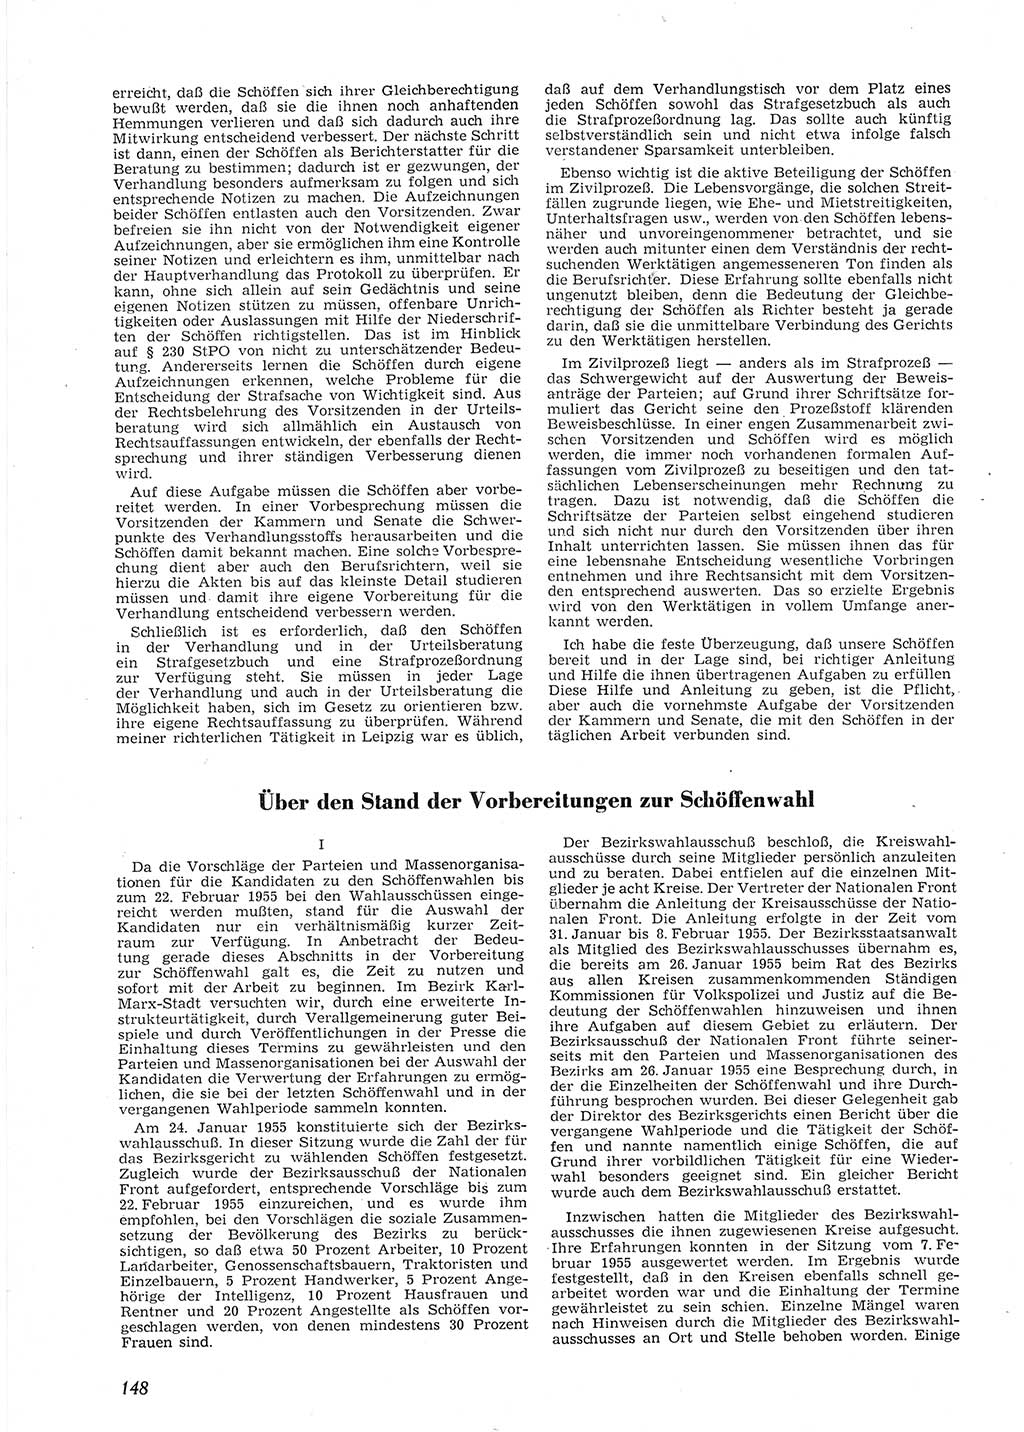 Neue Justiz (NJ), Zeitschrift für Recht und Rechtswissenschaft [Deutsche Demokratische Republik (DDR)], 9. Jahrgang 1955, Seite 148 (NJ DDR 1955, S. 148)